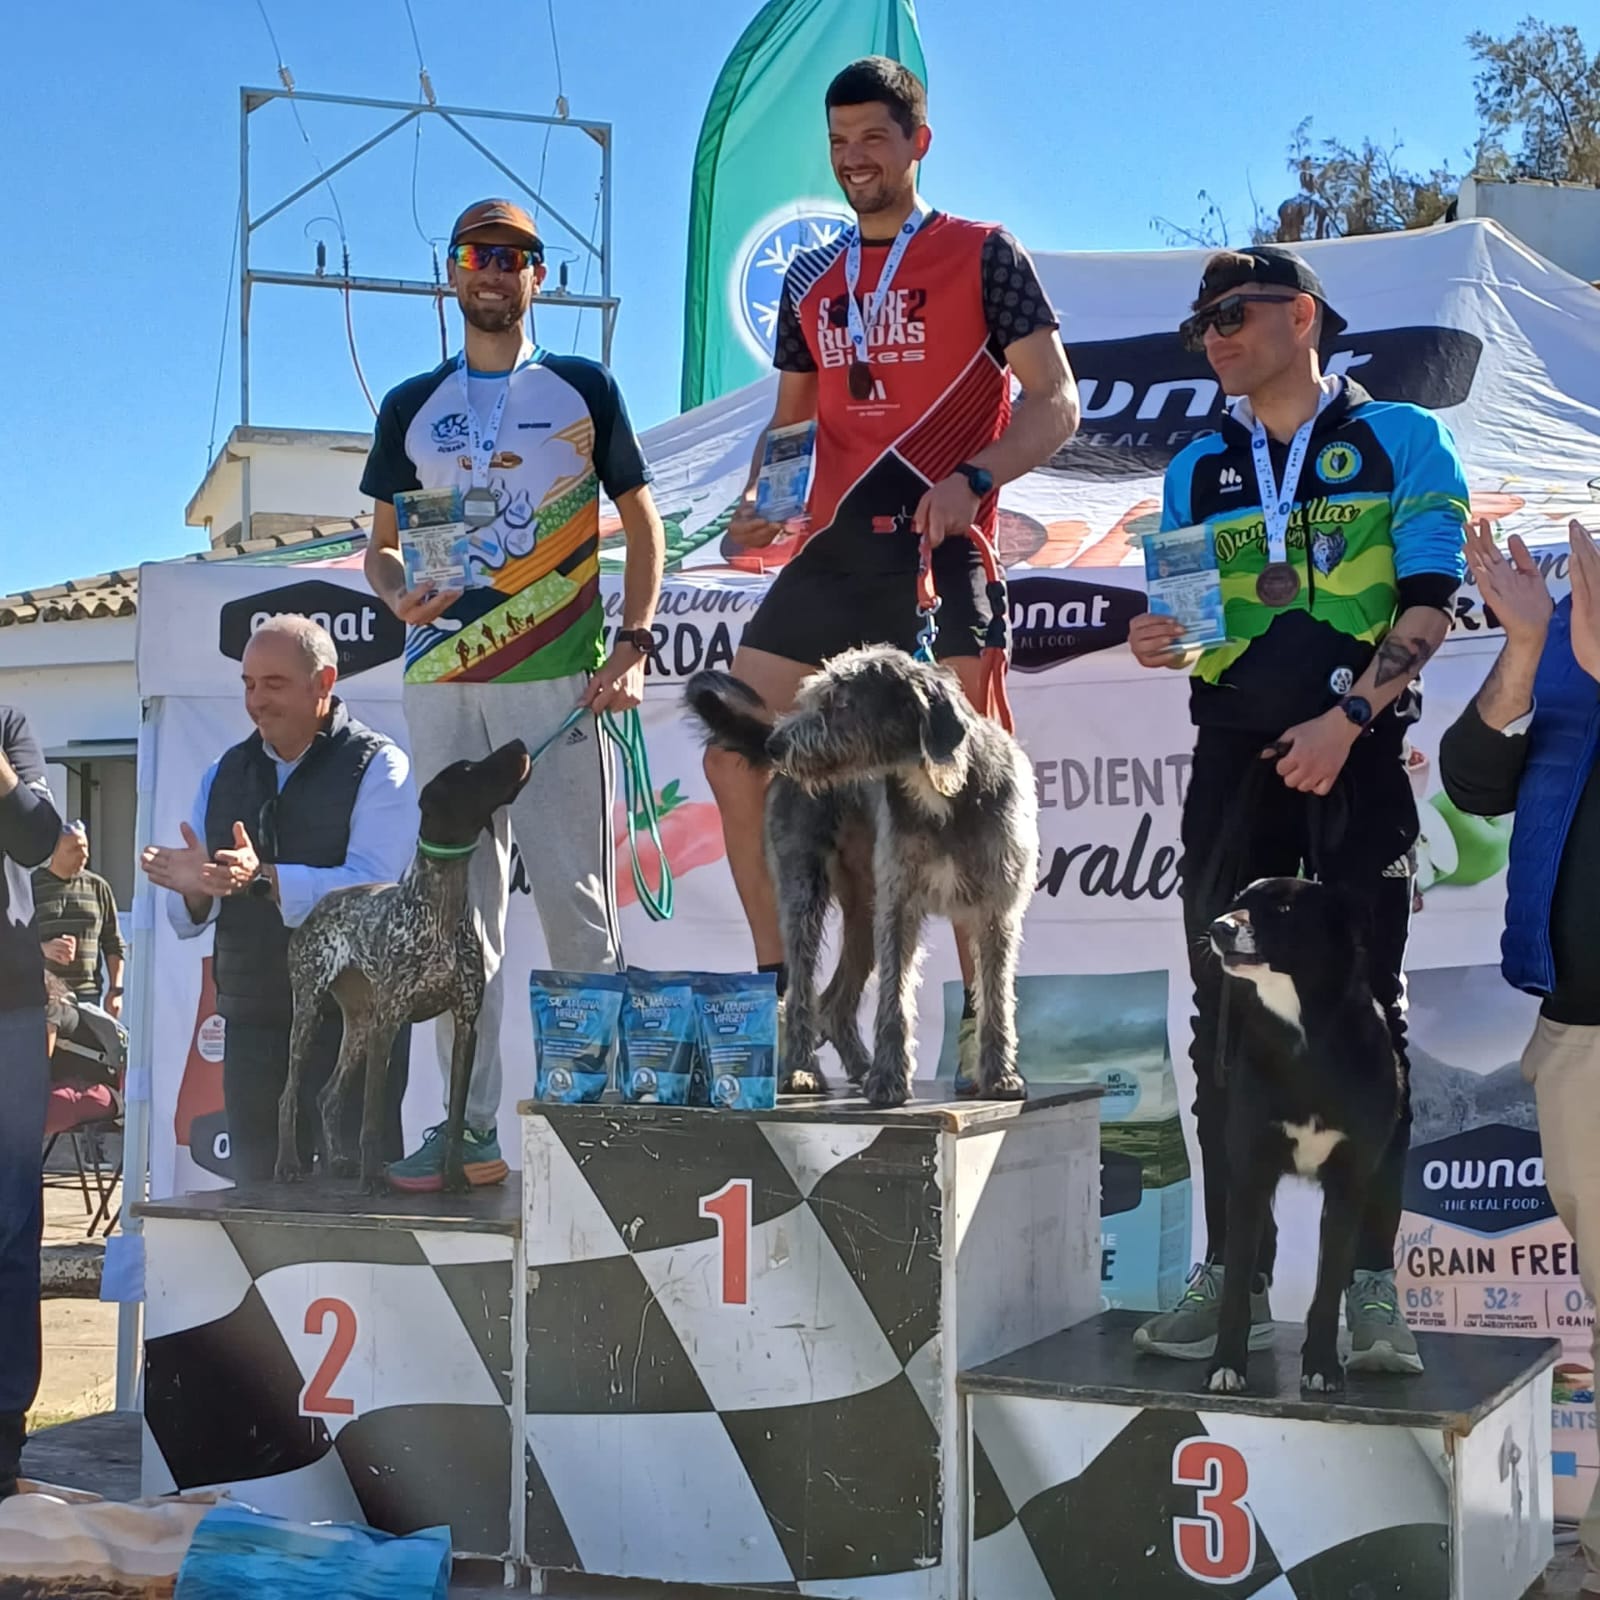 “Subcampeones” Carlos Bermúdez, Fernando Aragón y Daniel Aragón, “bronce” David Jiménez, Campeonato de Andalucía Mushing Tierra